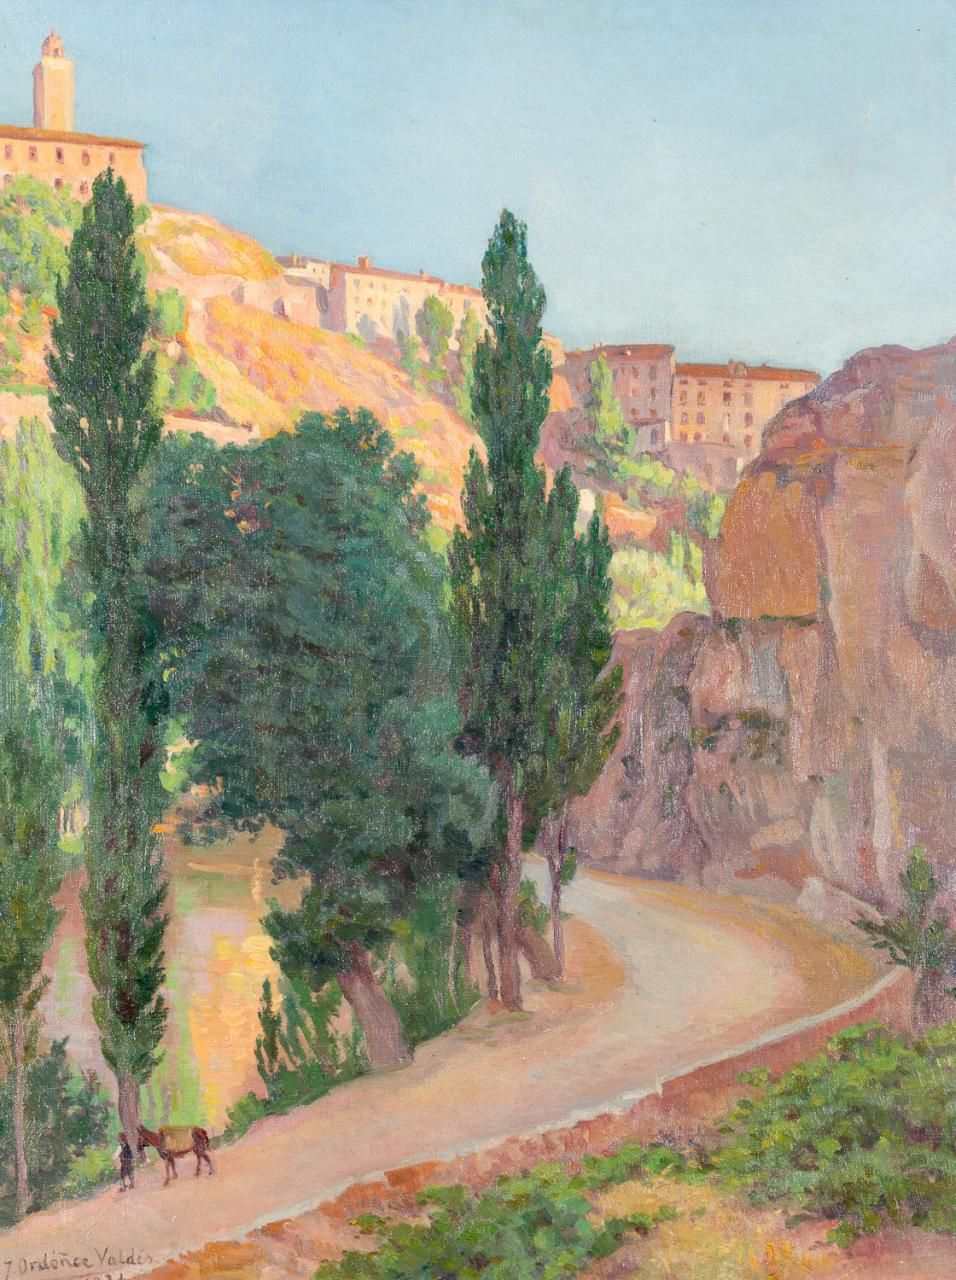 JOSÉ ORDÓÑEZ VALDÉS (Huelva, 1873 - 1953) Landscape
Oil on canvas
72 x 56 cm
Sig&hellip;